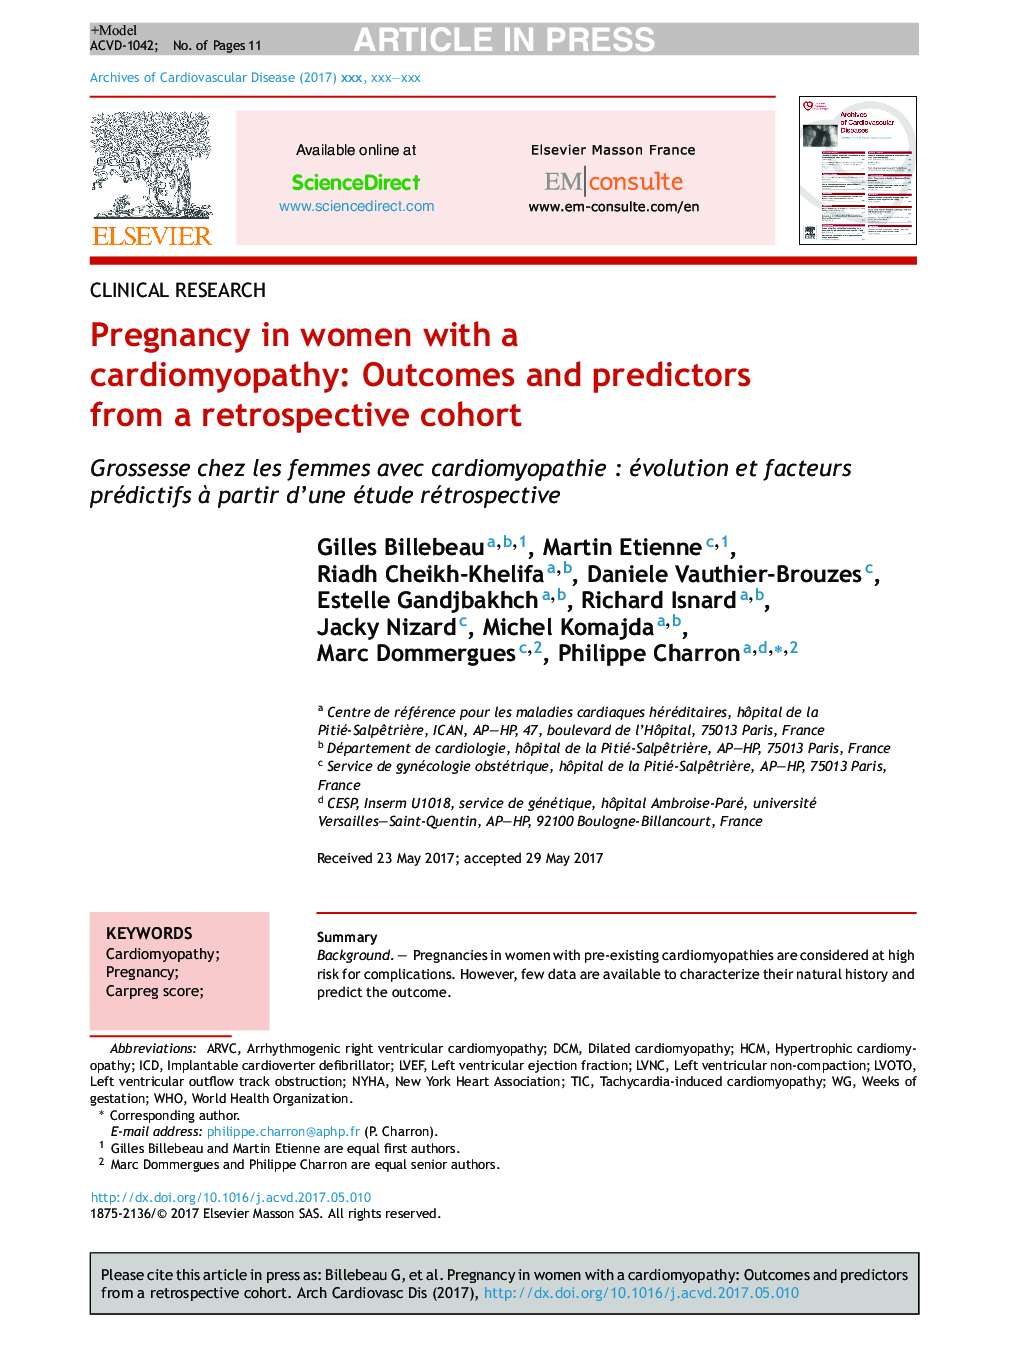 بارداری در زنان مبتلا به کاردیومیوپاتی: نتایج و پیش بینی کننده ها از یک گروه کنترل گذشته نگر 